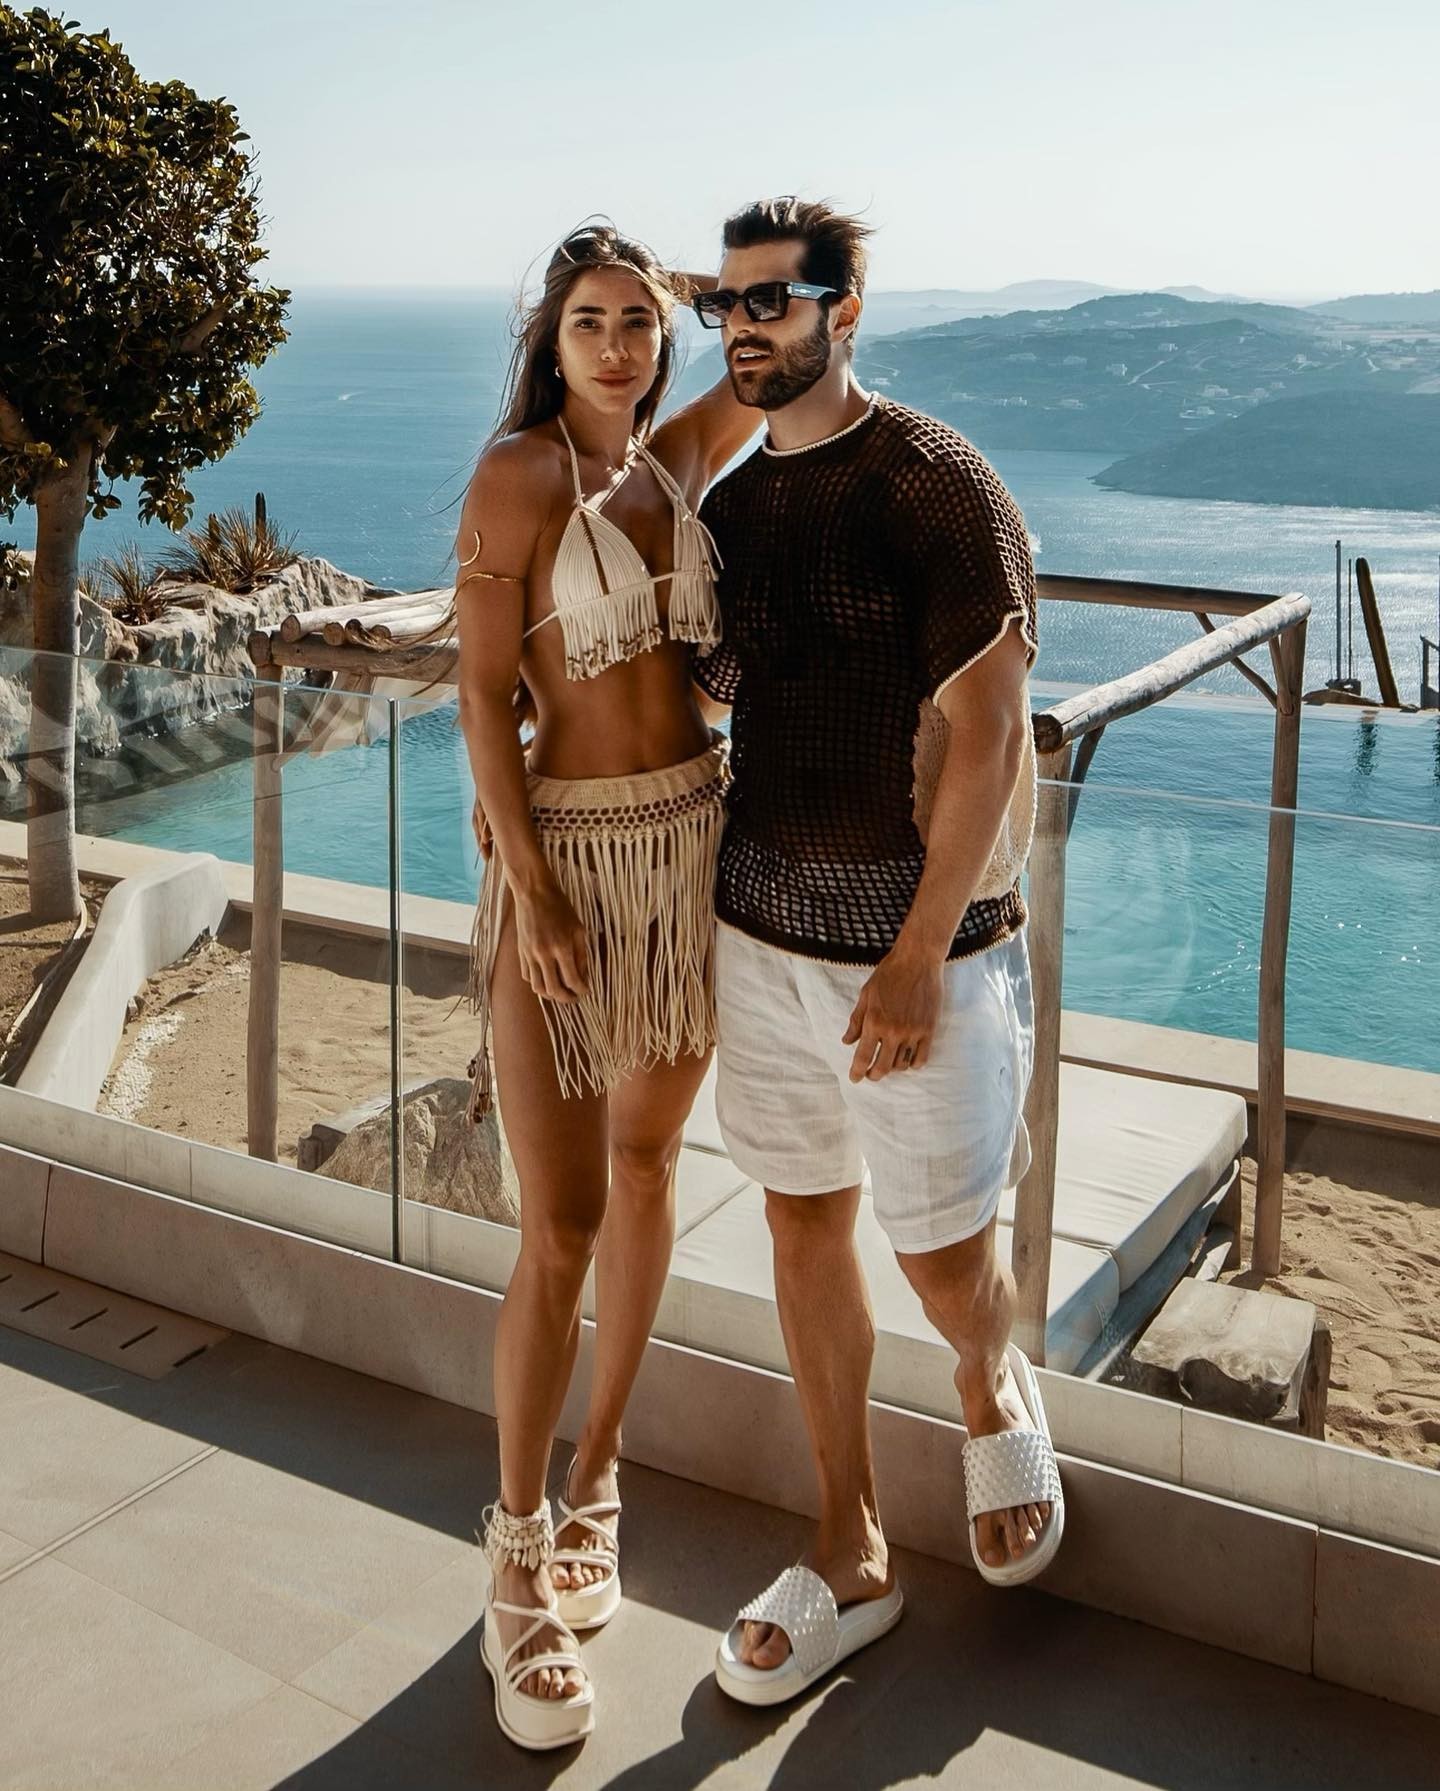 Antes de pousaram em Ibiza, o casal curtiu as paisagens de Mykonos, na Grécia (Foto: Reprodução / Instagram)